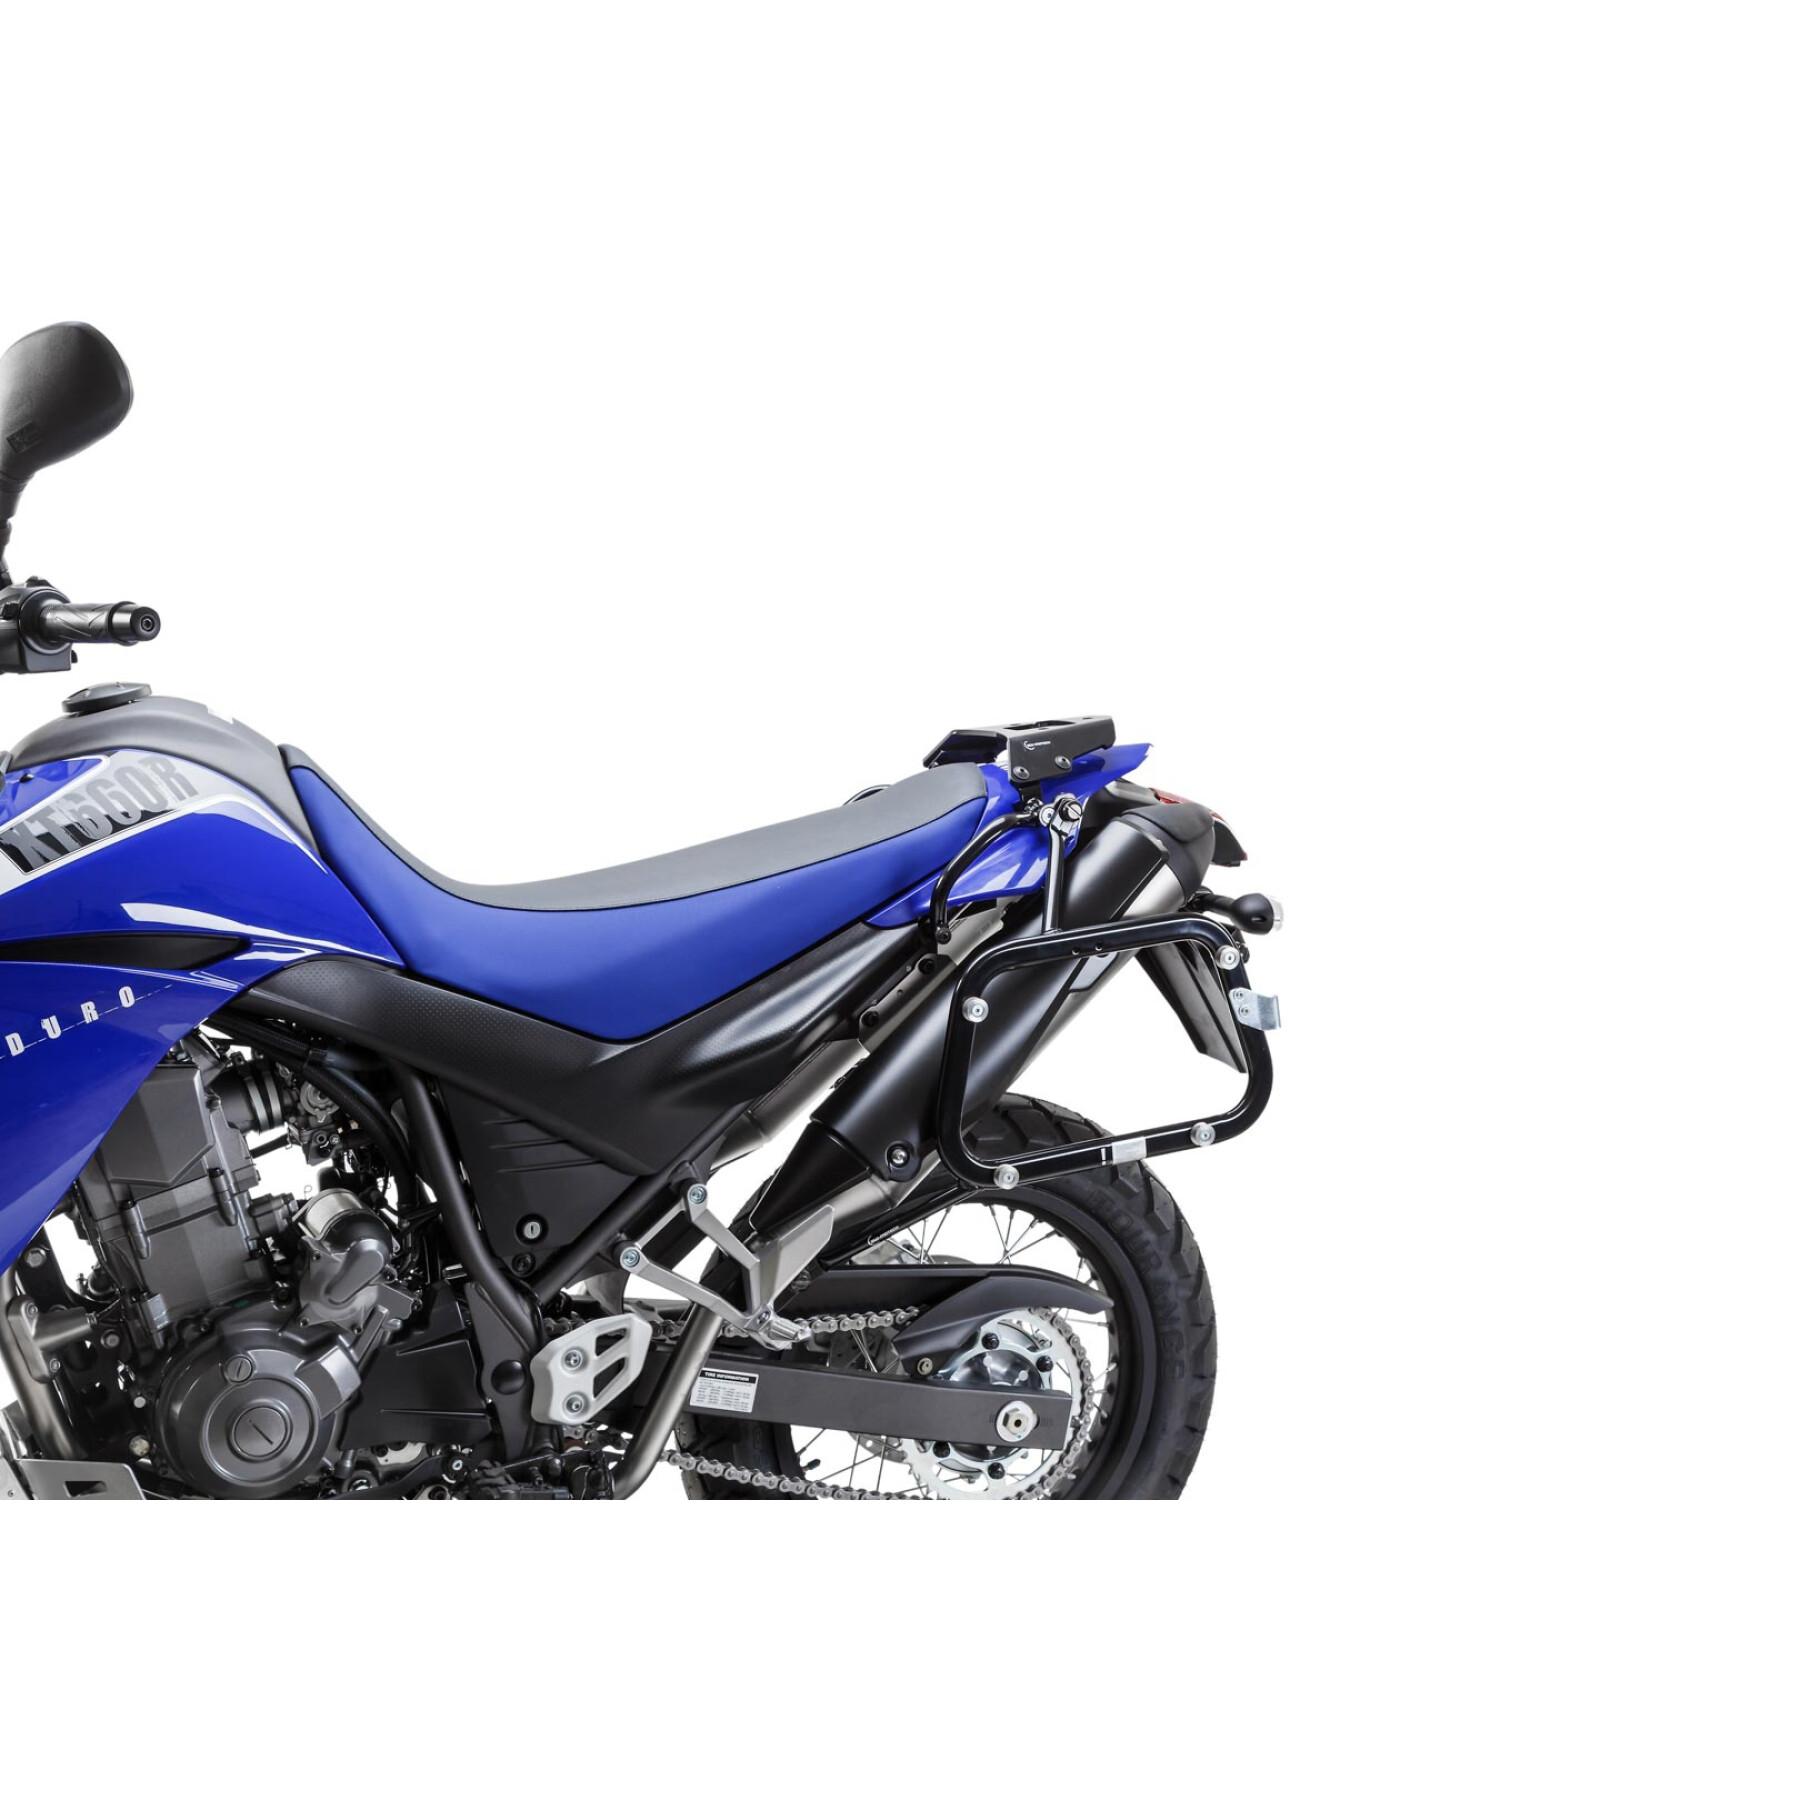 Sidostöd för motorcykel Sw-Motech Evo. Yamaha Xt 660 X / R (04-)